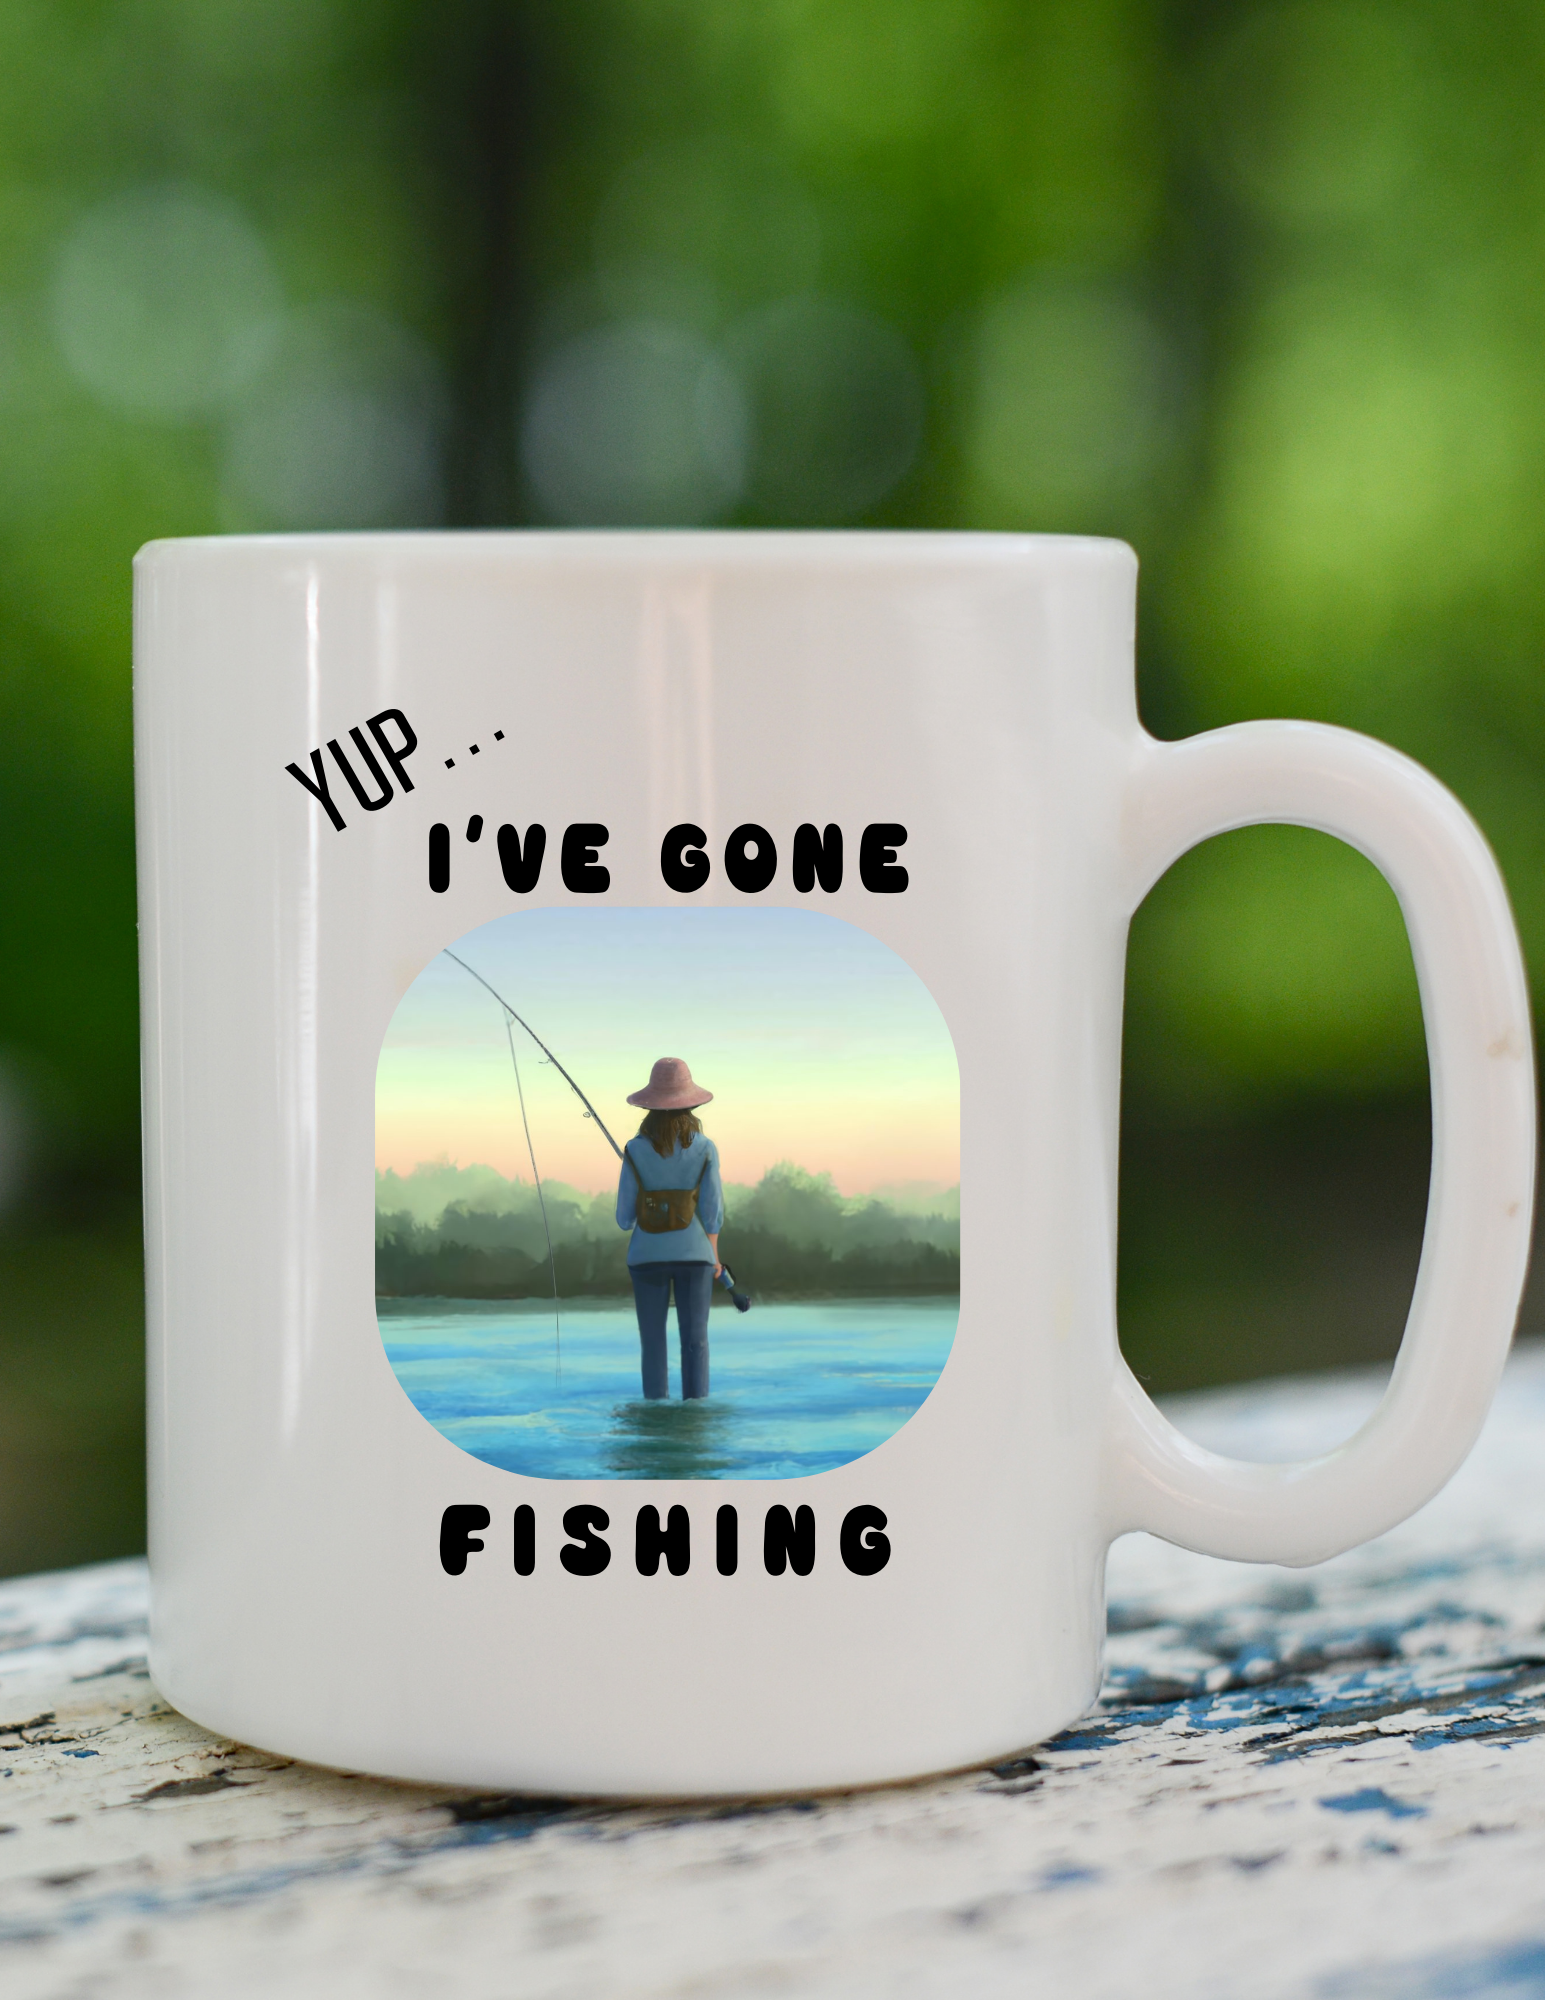 Fishing Mug For Her